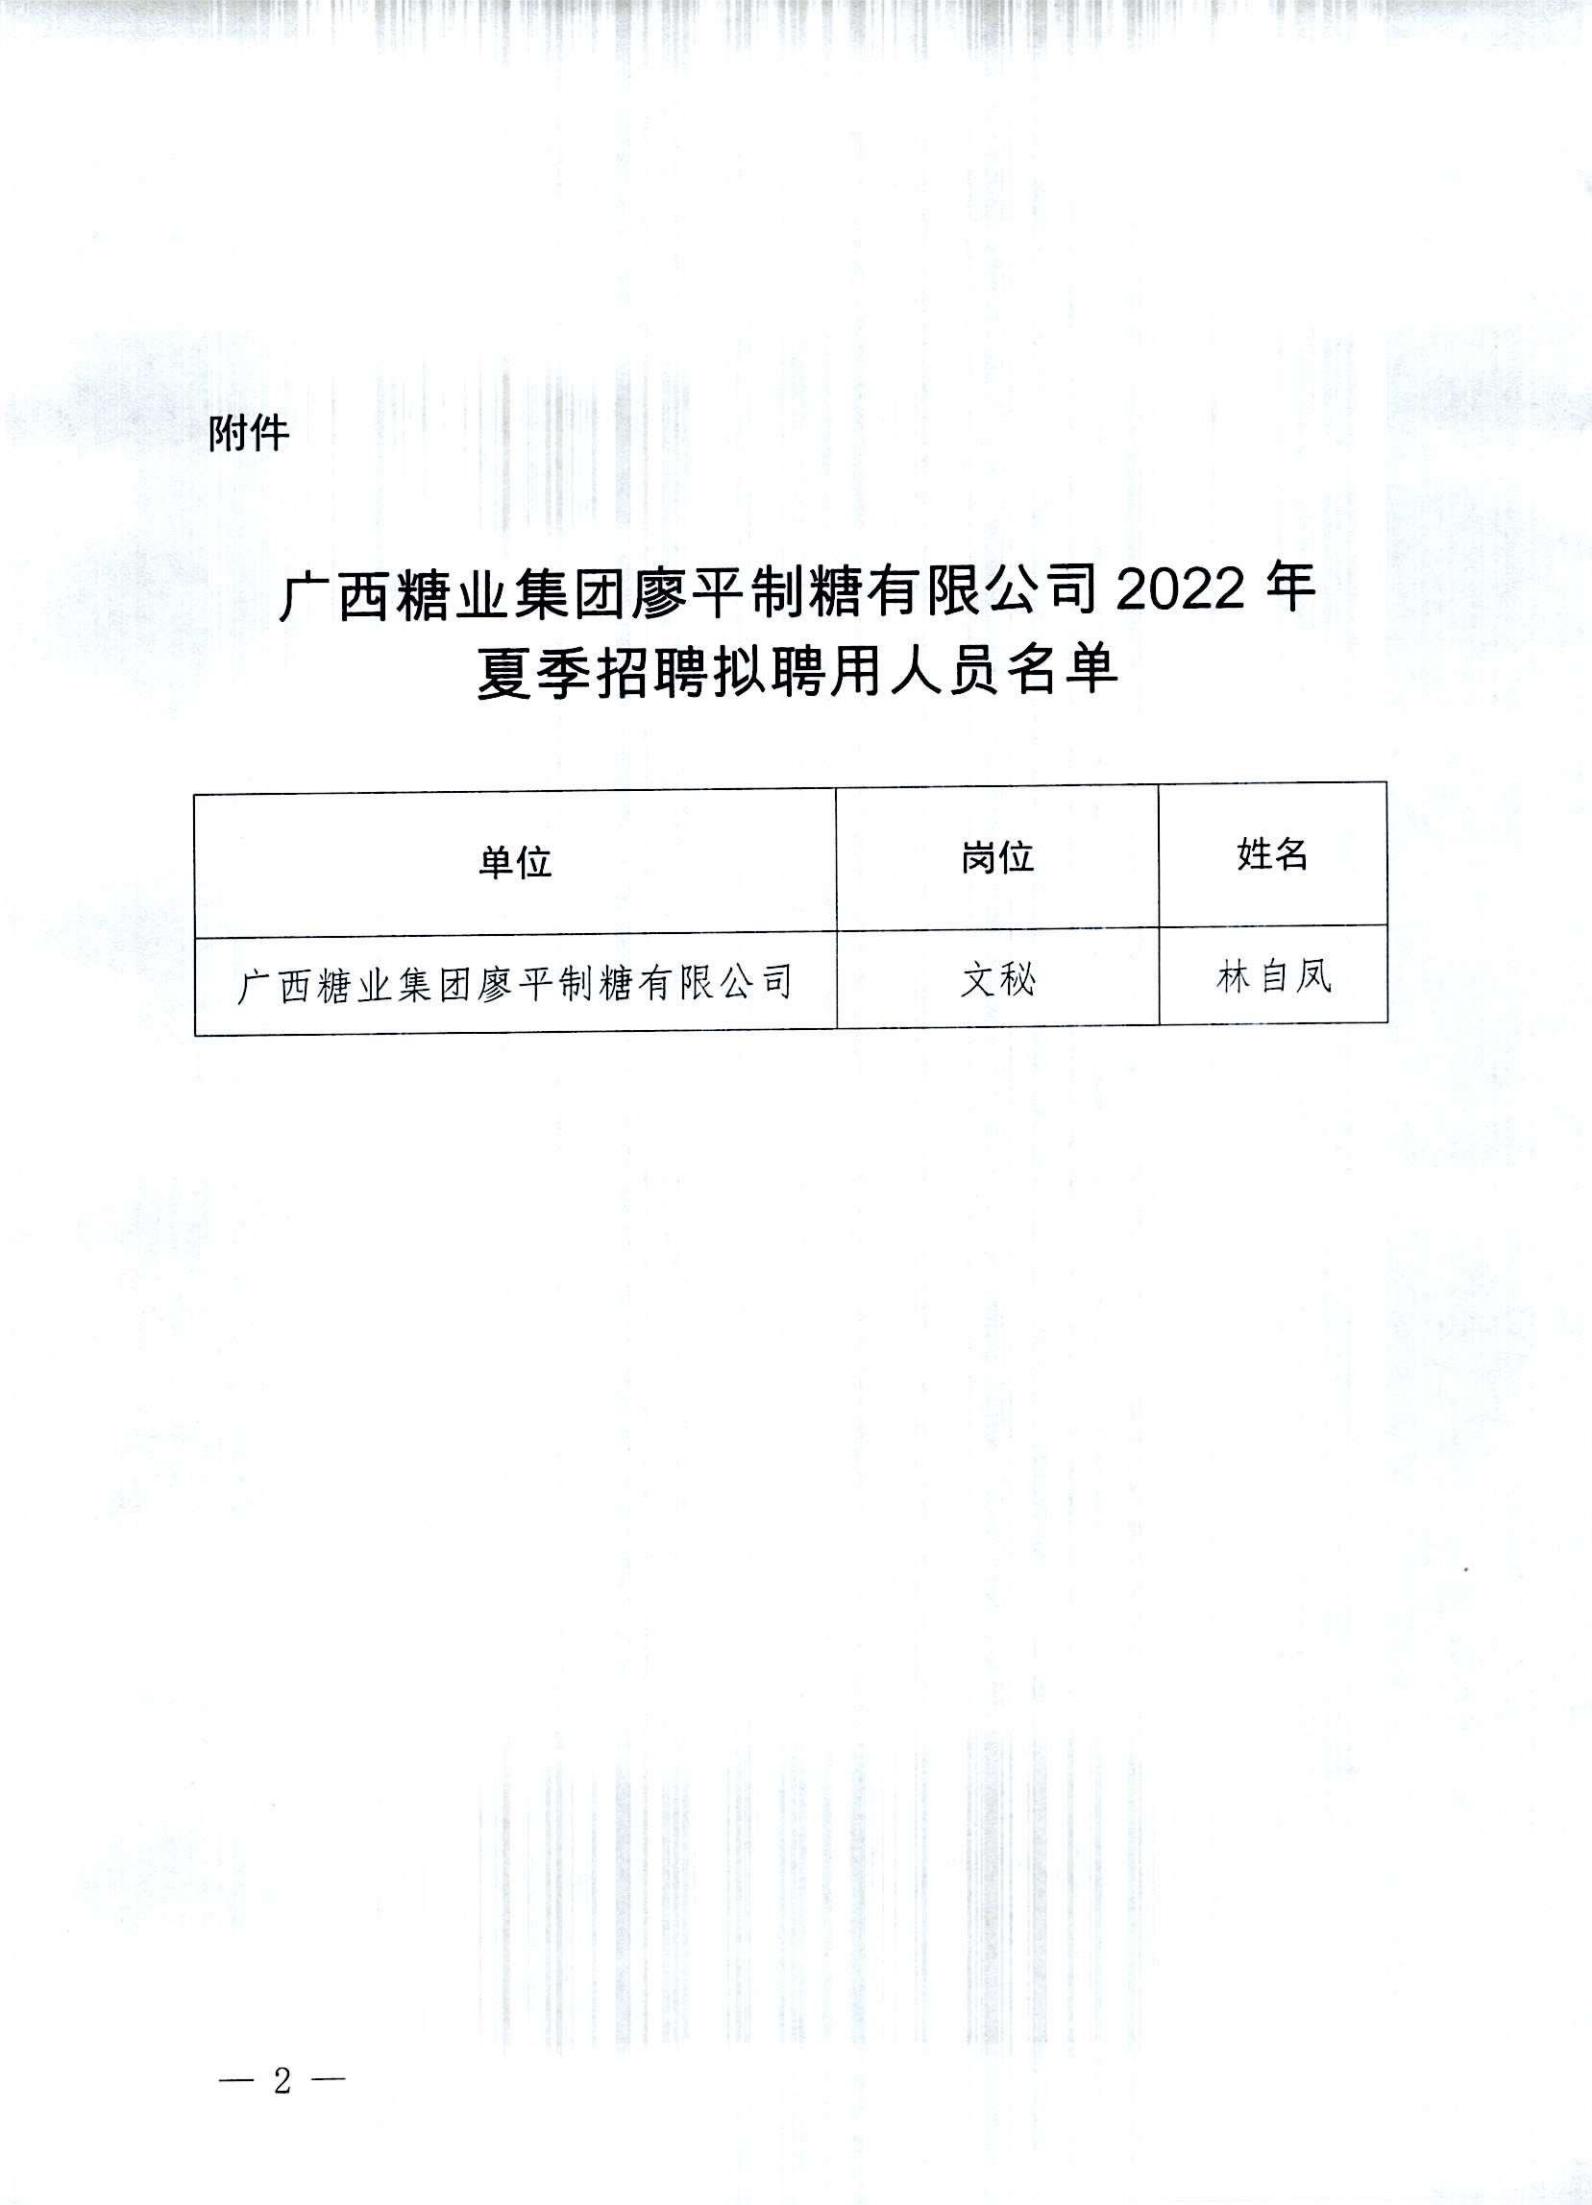 3  广西糖业集团廖平制糖有限公司2022年夏季招聘拟聘用人员名单公示(1)_01.jpg